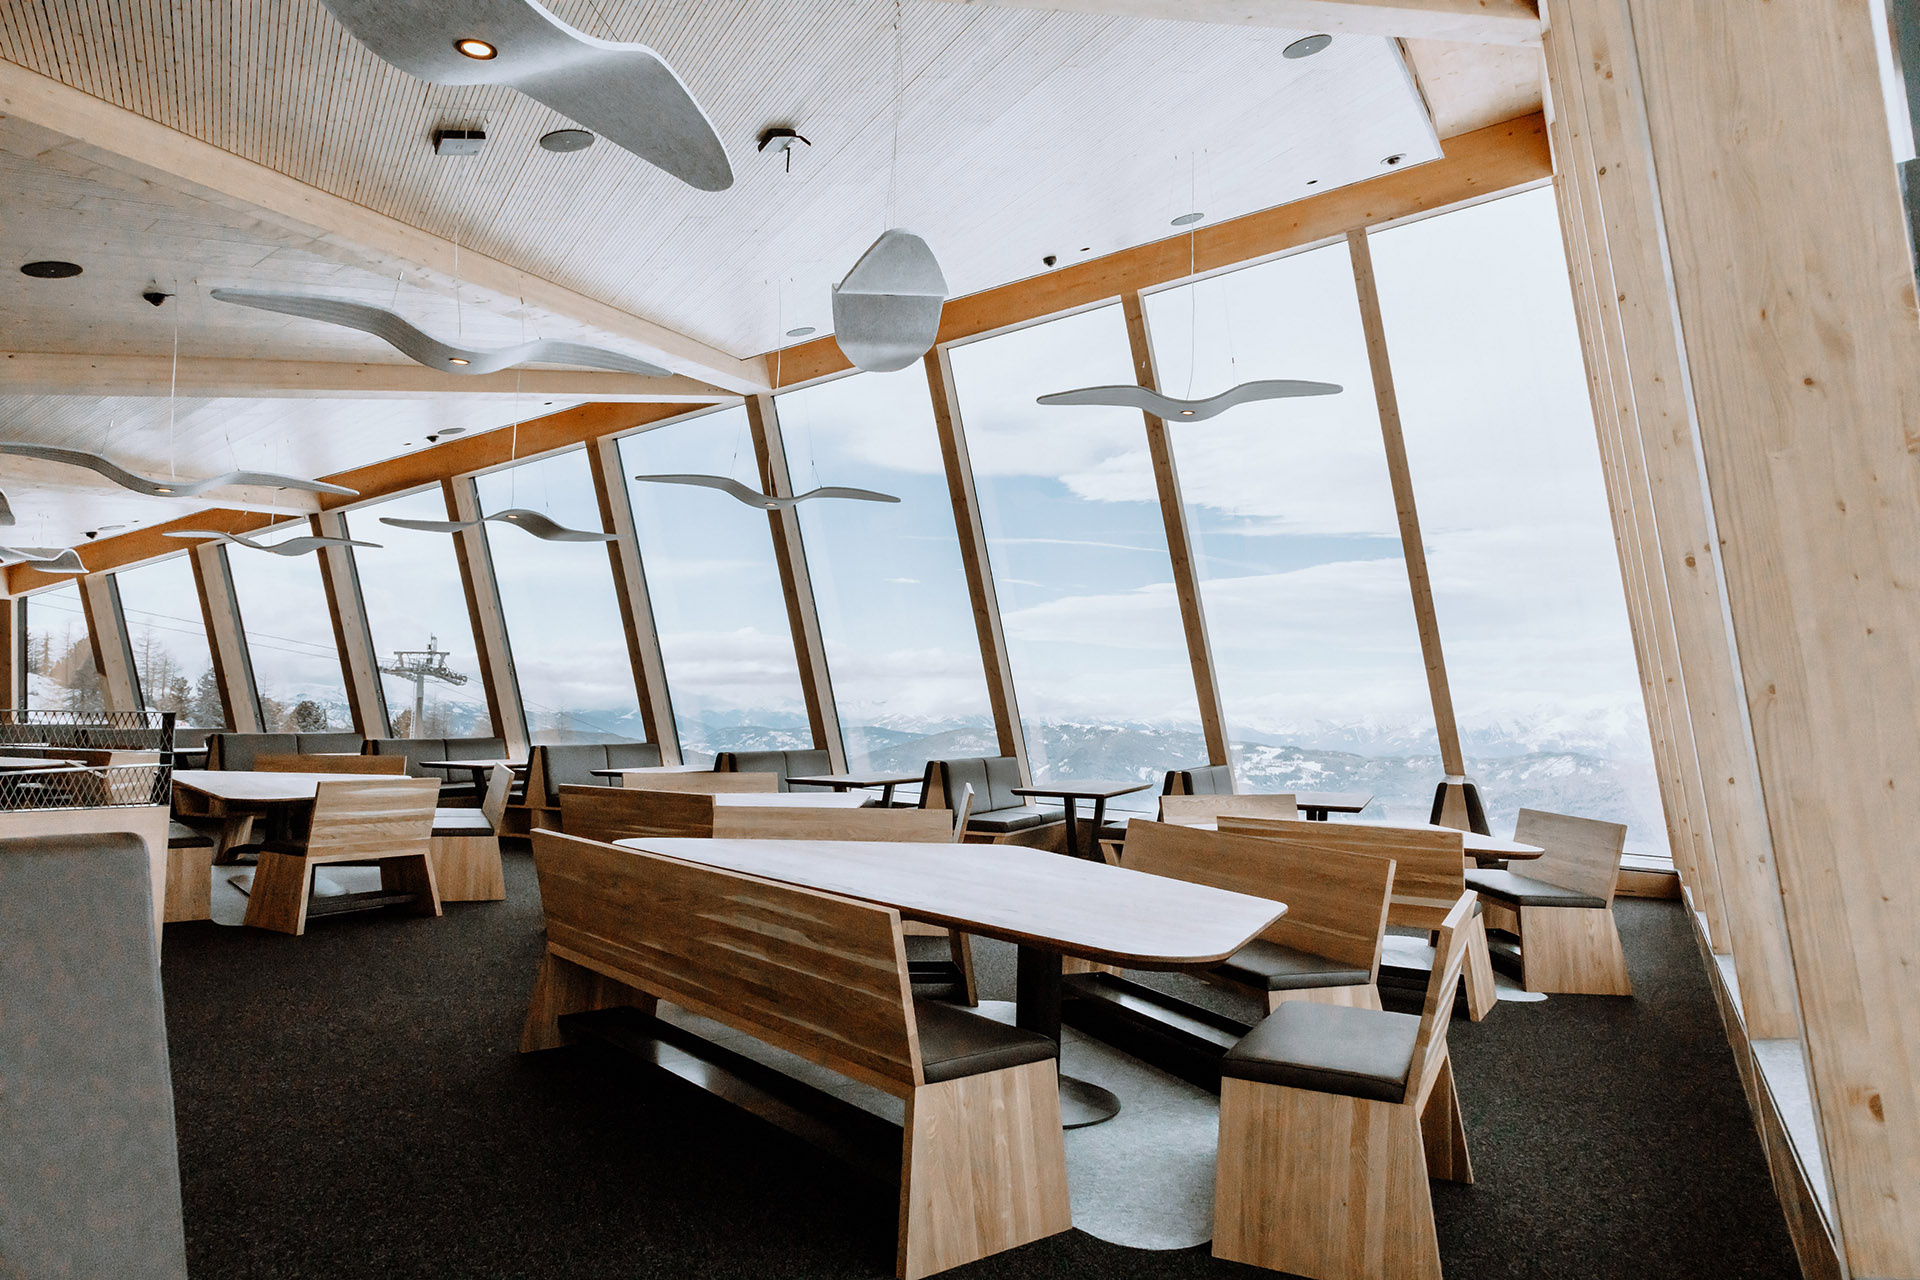 Restaurante situado en lo alto de los Alpes austriacos. Impresionantes paisajes y vistas panorámicas de 360 grados